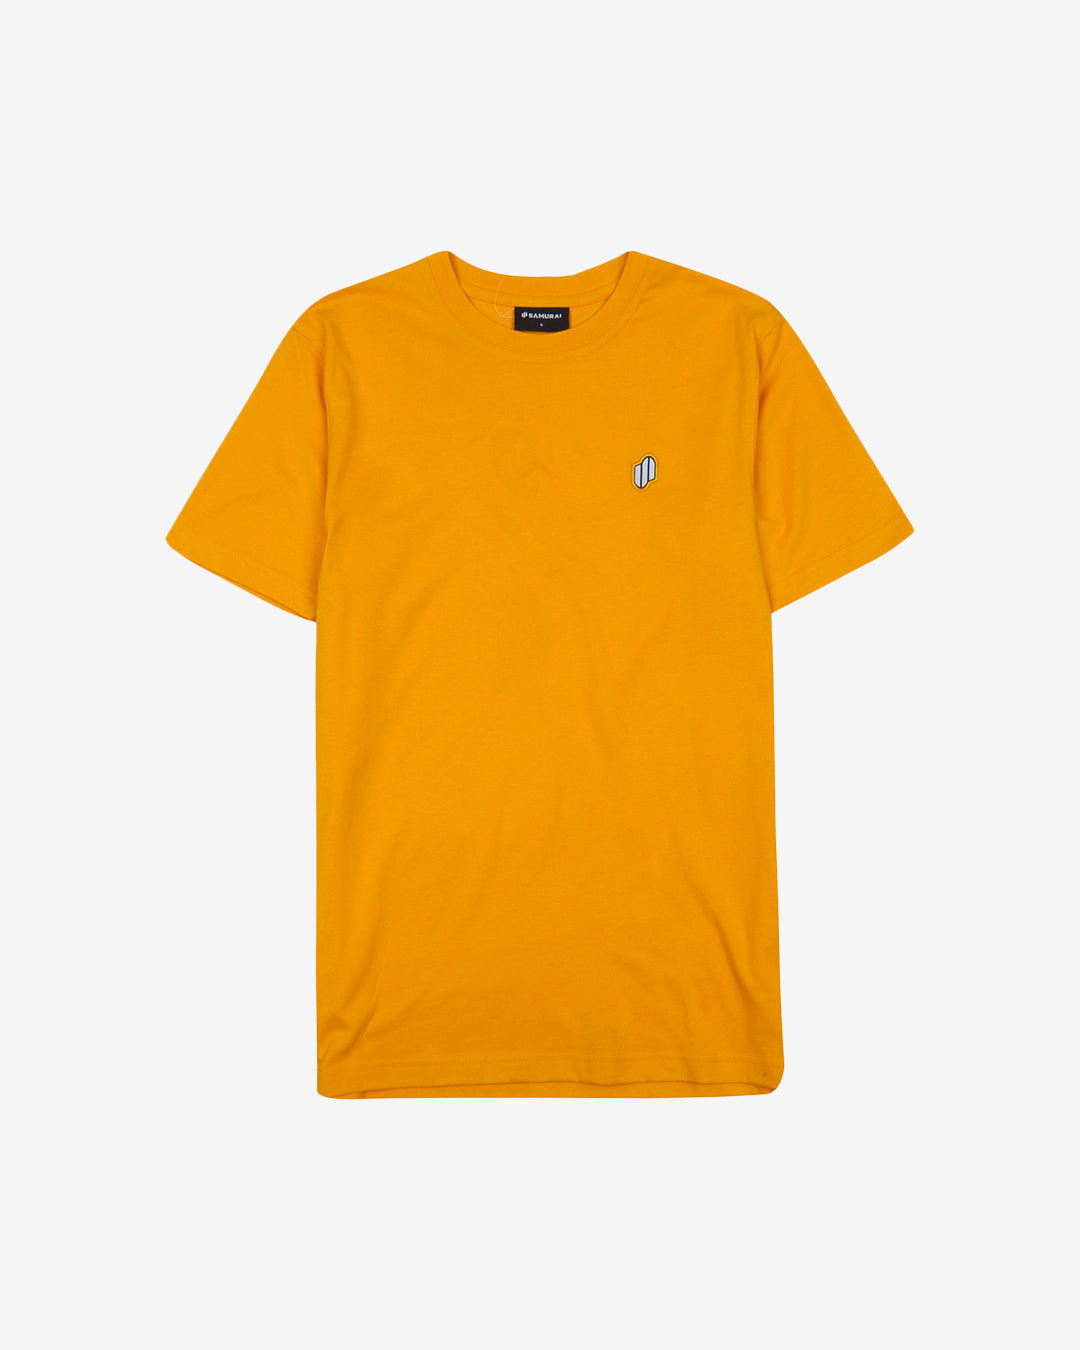 PFC: 002-1 - Women's T-Shirt - Amber Yellow